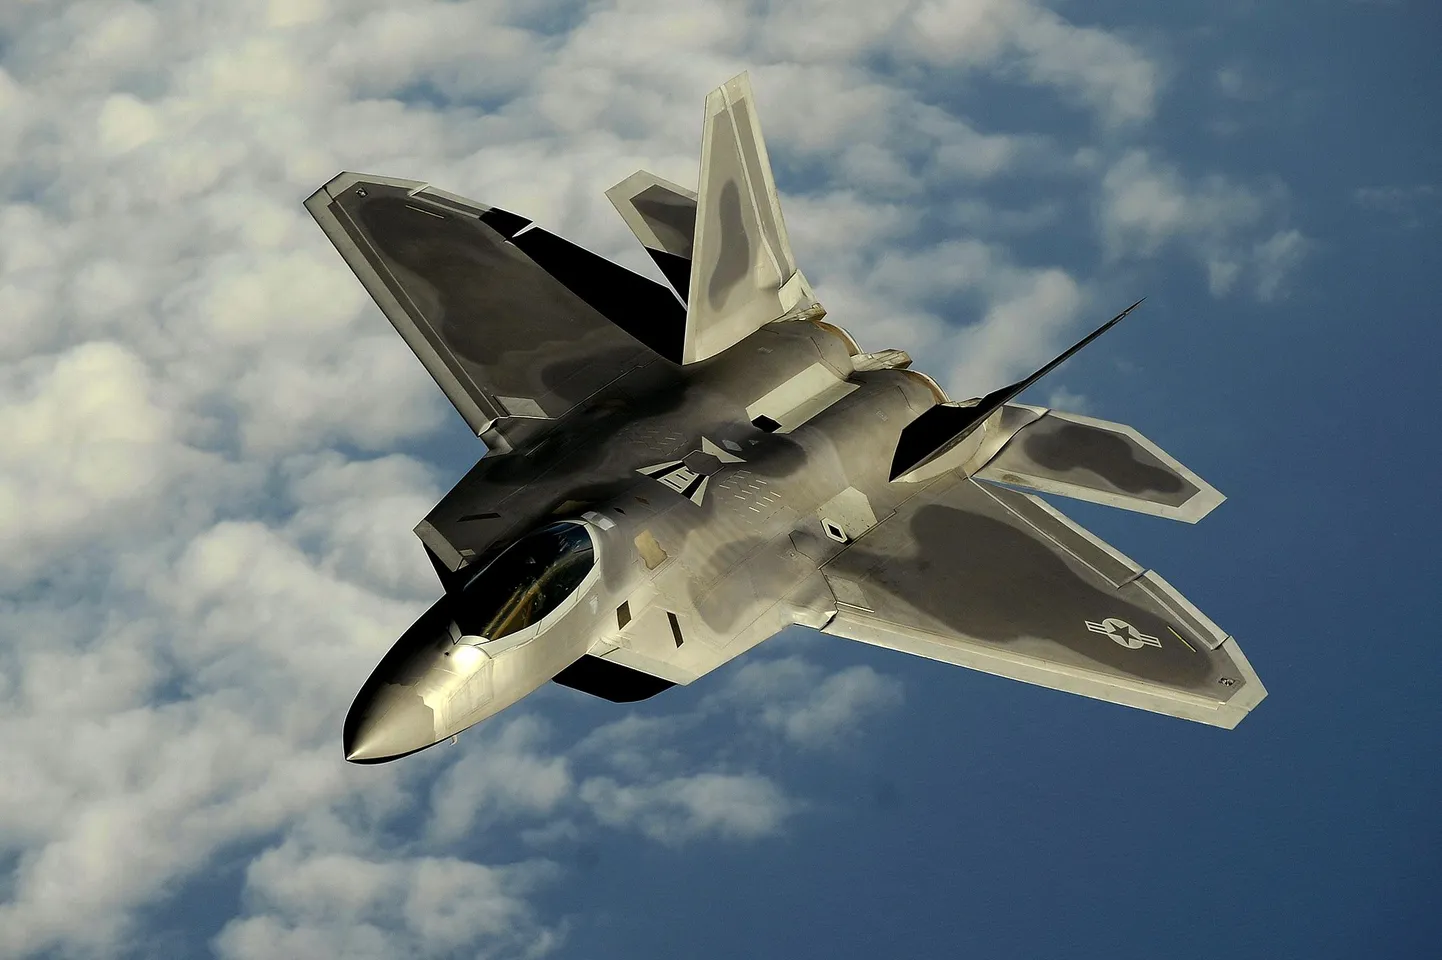 Истребитель пятого поколения F-22А Raptor, созданный по технологии "стэлс", предназначен преимущественно для завоевания превосходства в воздухе. Официально состоит на вооружении ВВС США с 2005 года.